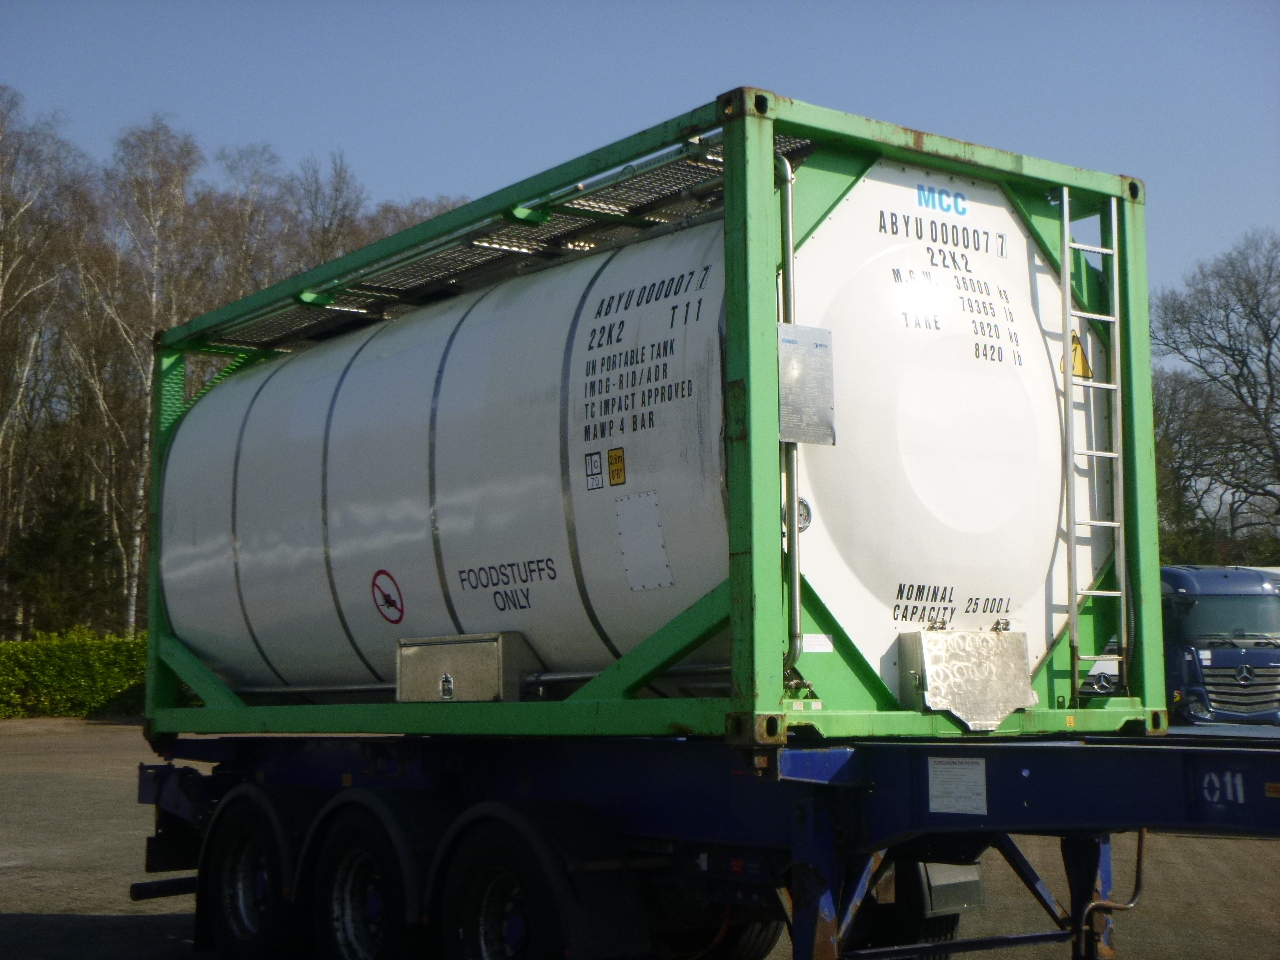 Kontener zbiornikowy, Naczepa Danteco Food tank container inox 20 ft / 25 m3 / 1 comp: zdjęcie 2